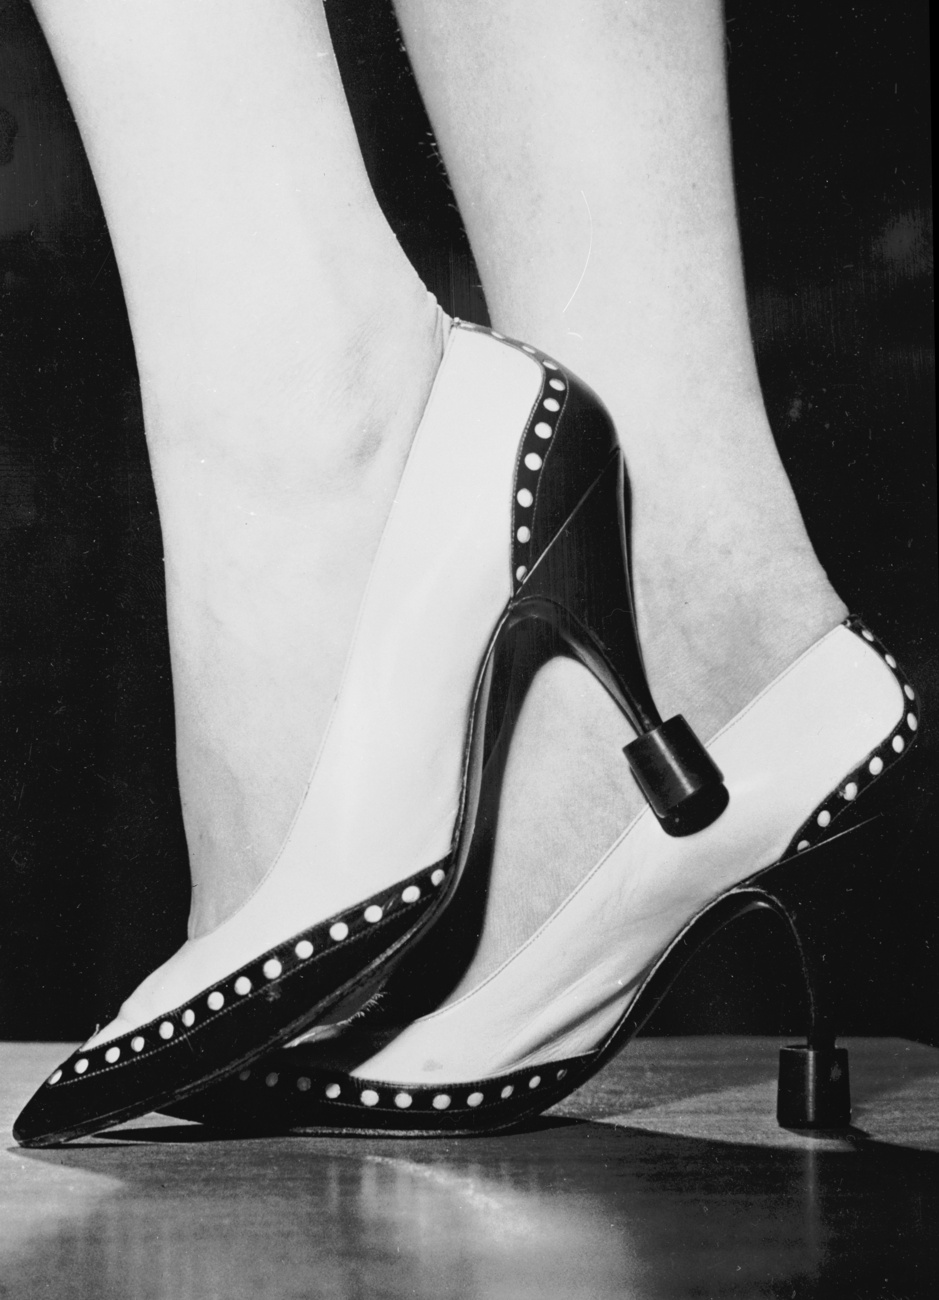 Egy hirdetőtábla az 1930-as évekből. Mindegyik cipő 8,75 dollárba került, és különleges párnázottságuknak köszönhetően nagyon kényelmes viseletnek számítottak - állítják.